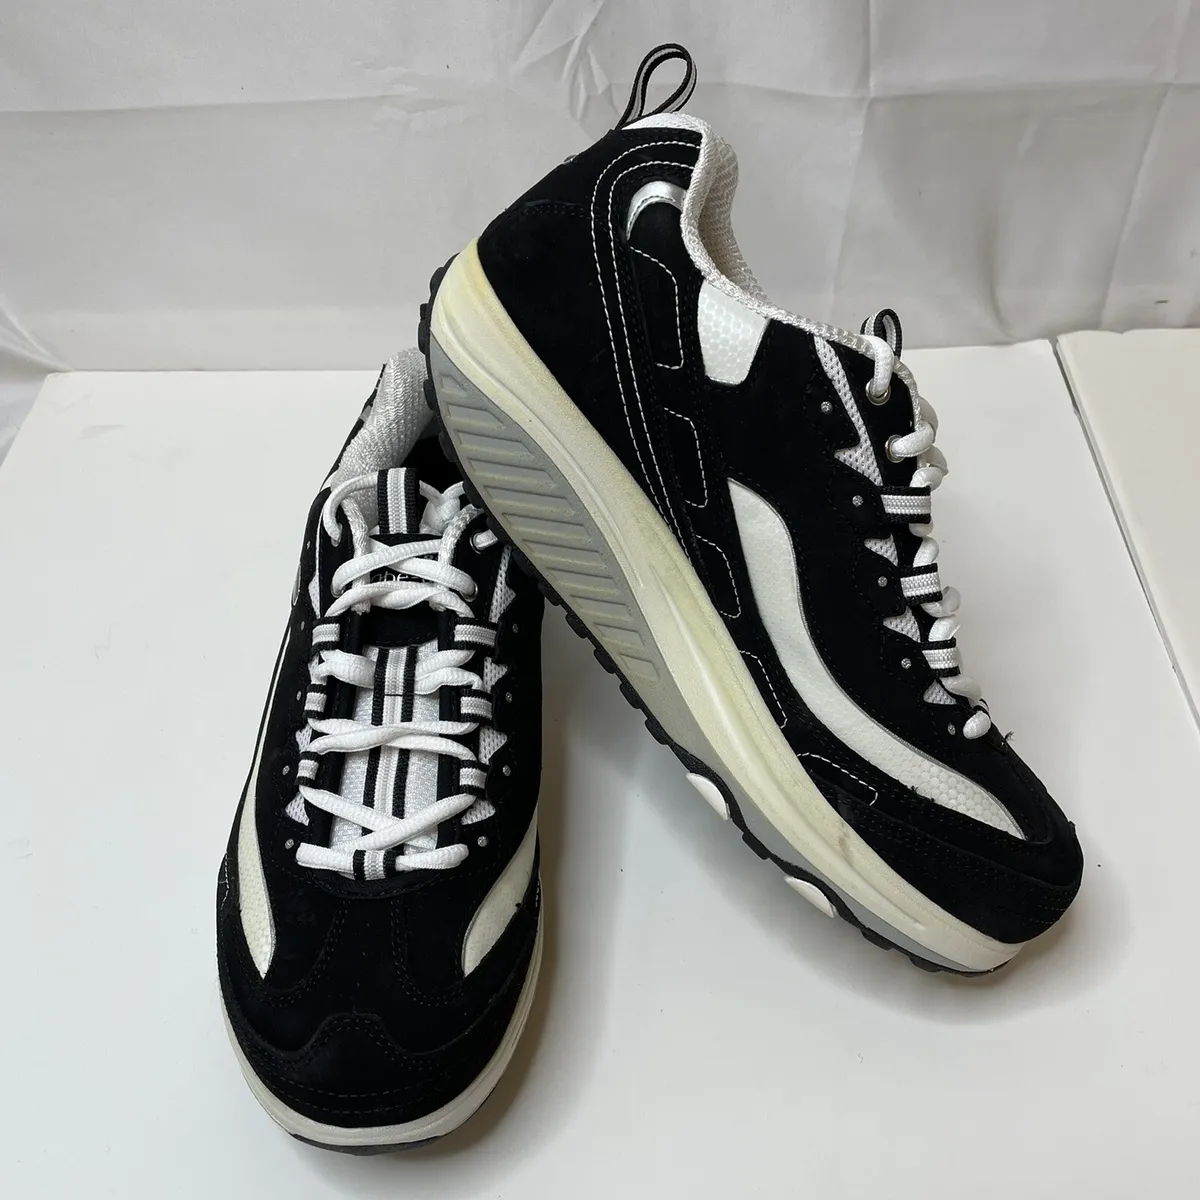 Skechers Shape-Ups Women’s Sneakers 9 Black White Walking Shoes